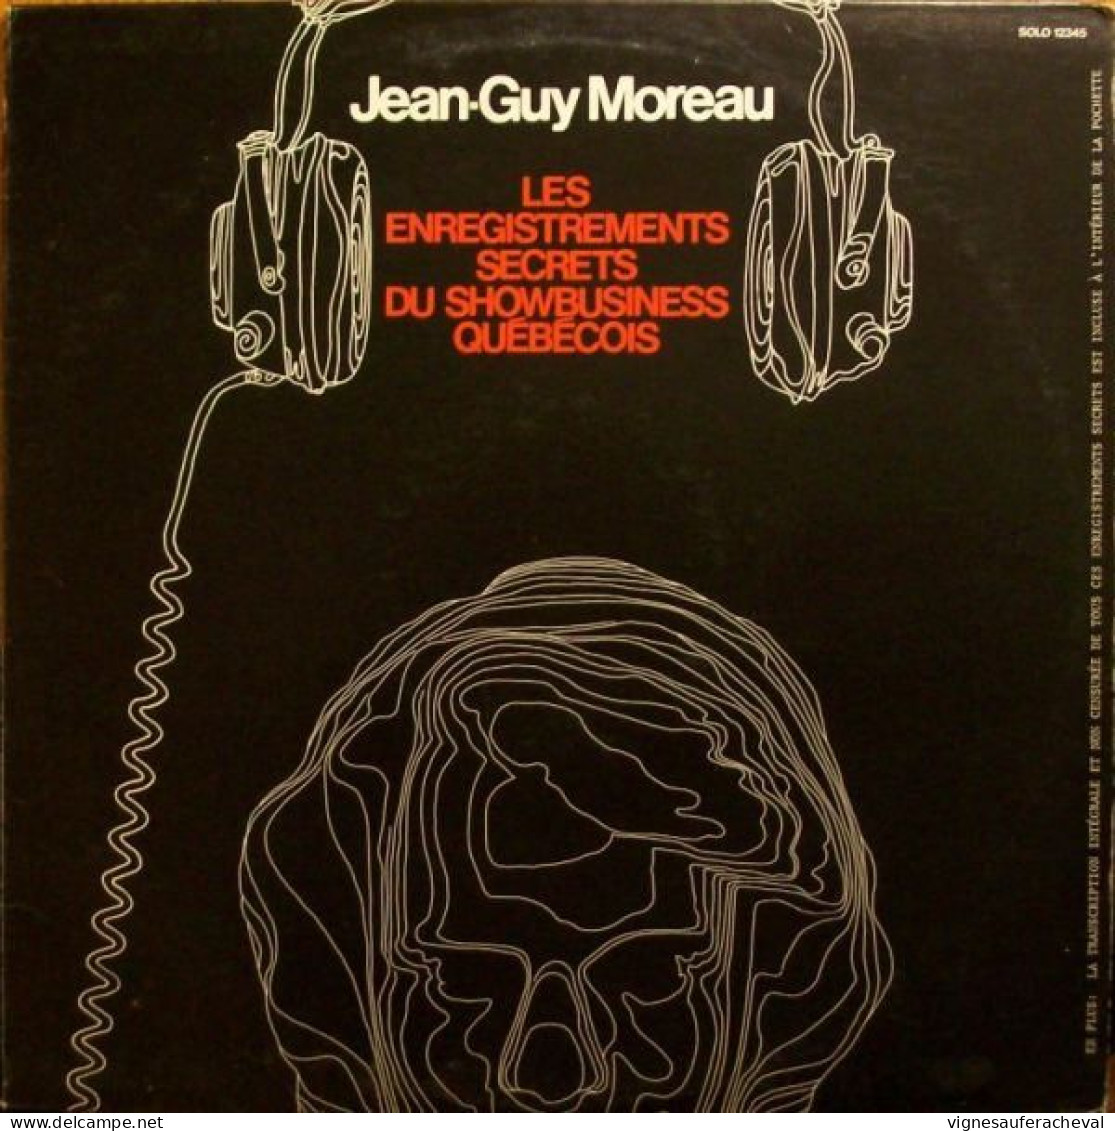 Jean-Guy Moreau - Les Enregistrements Secrets Du Showbusiness Québécois - Humor, Cabaret